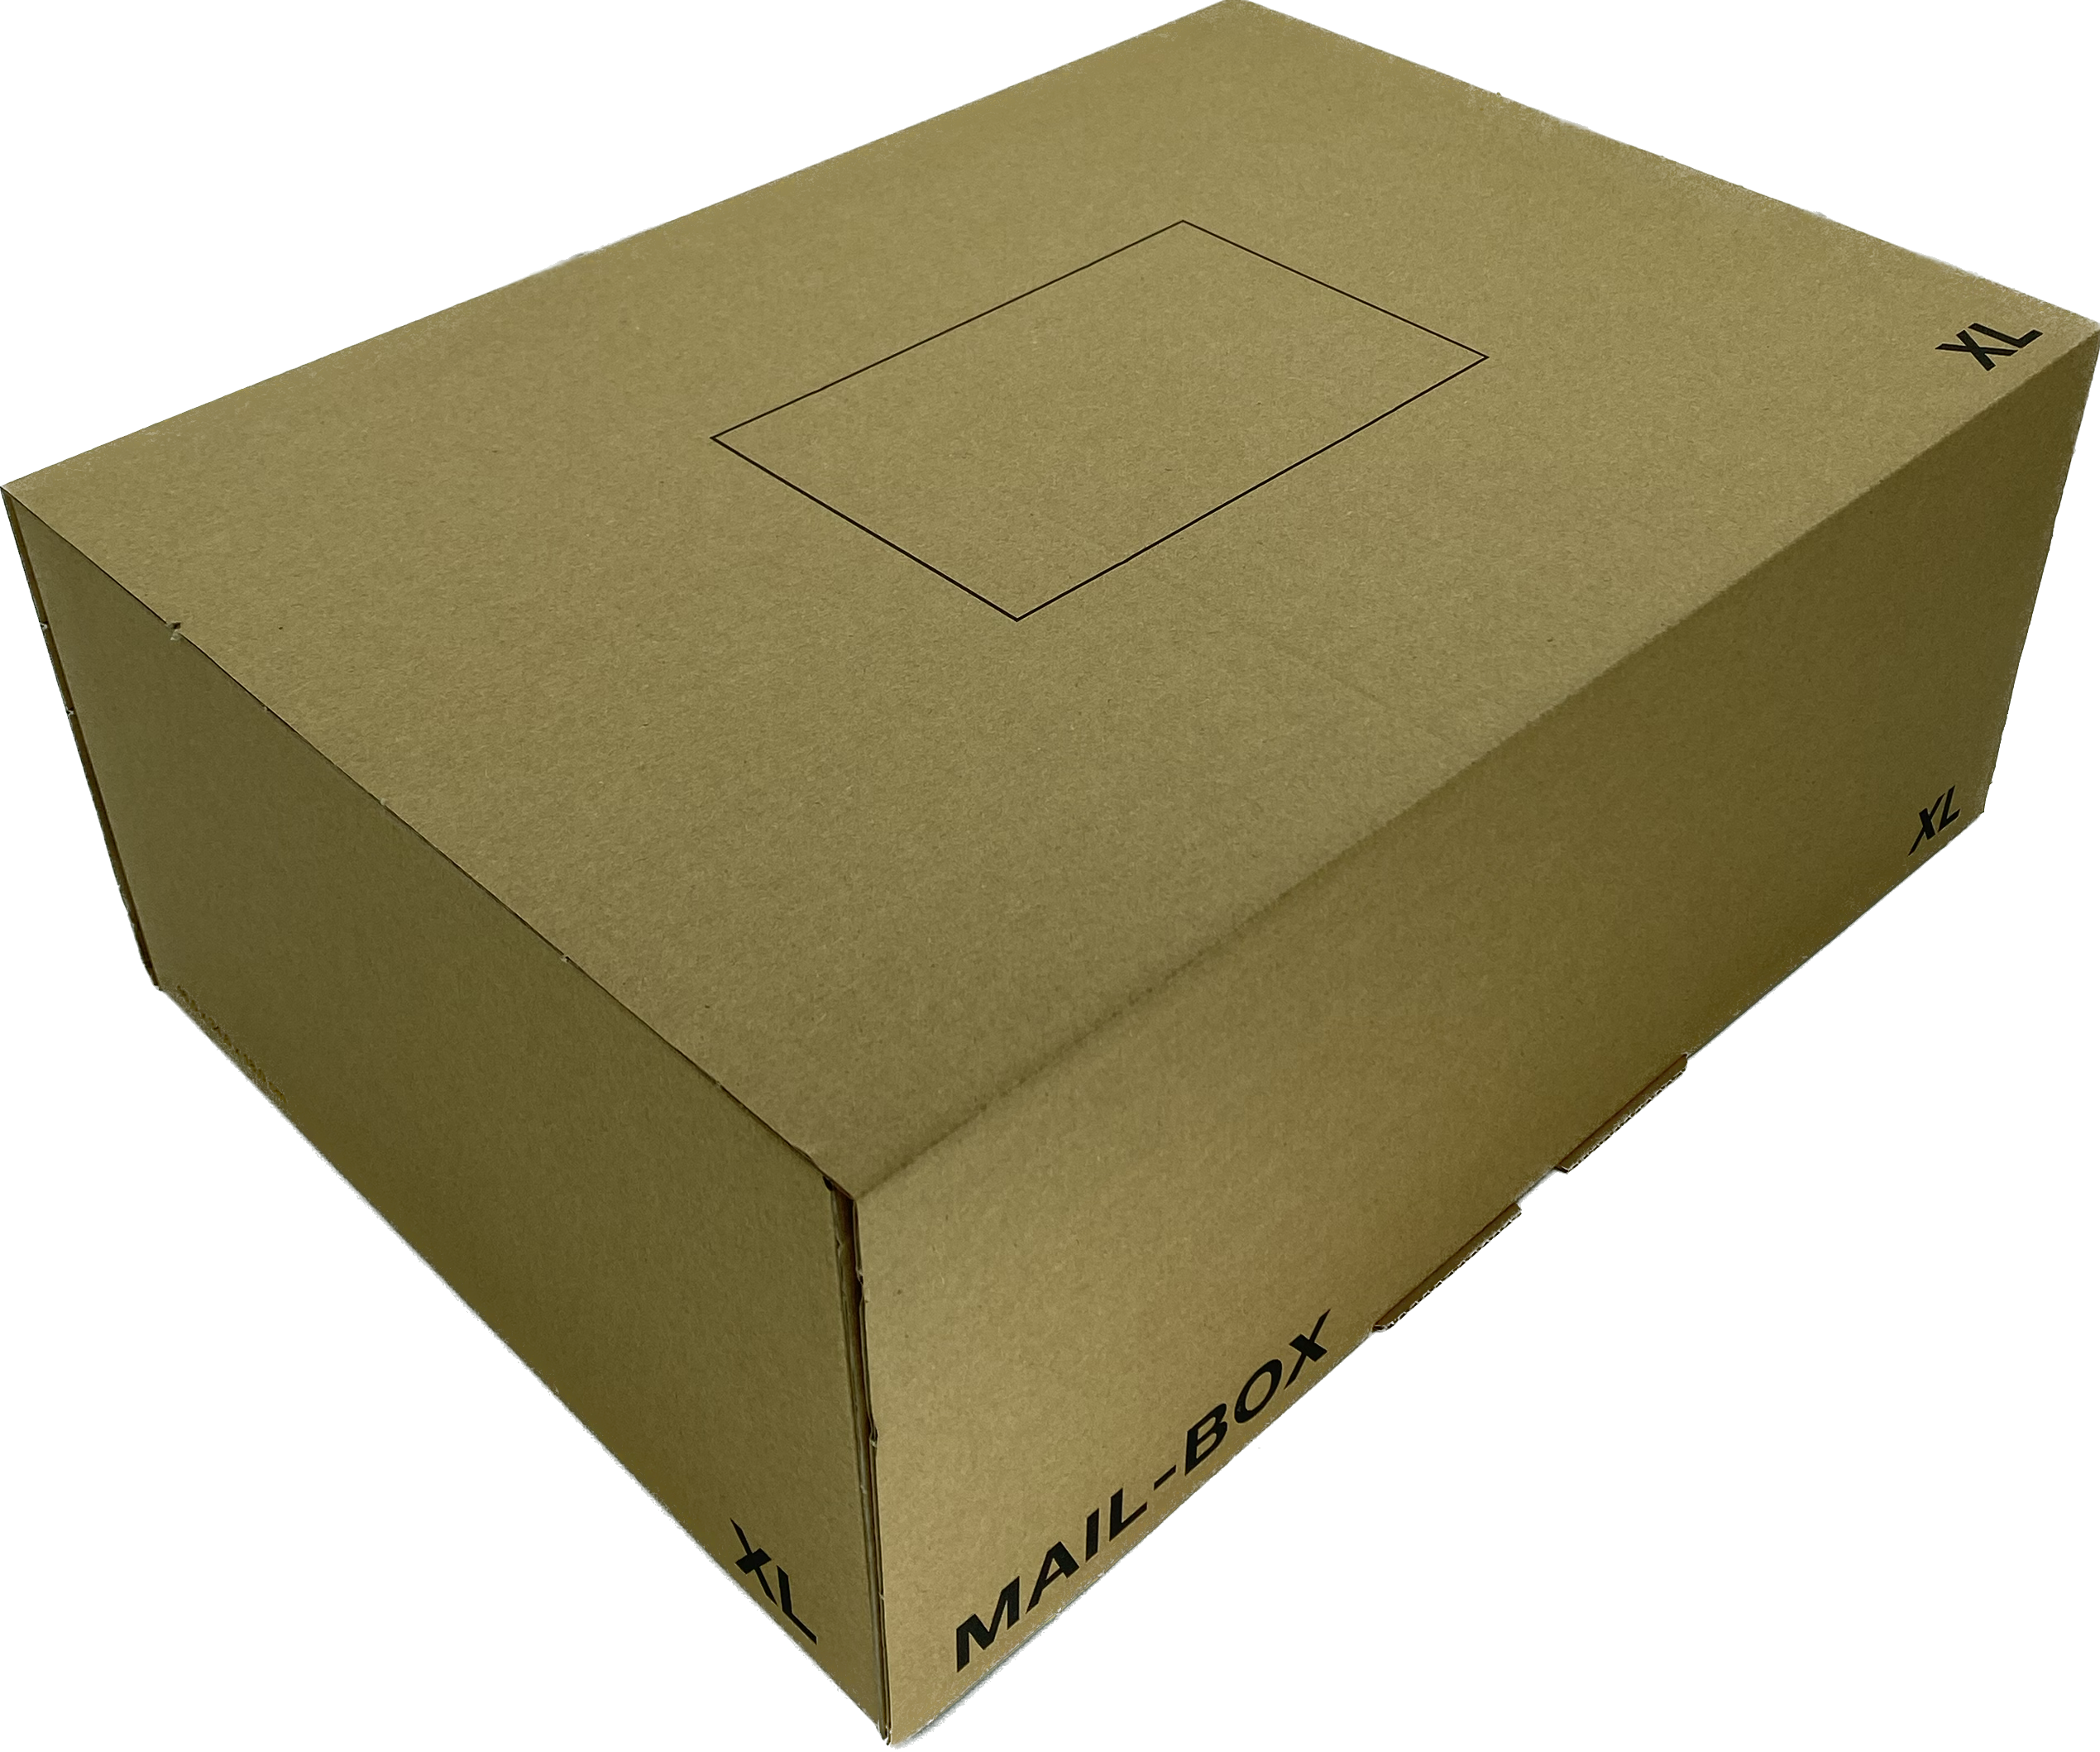 Mailbox-Karton XL, 460x333x174 mm, braun